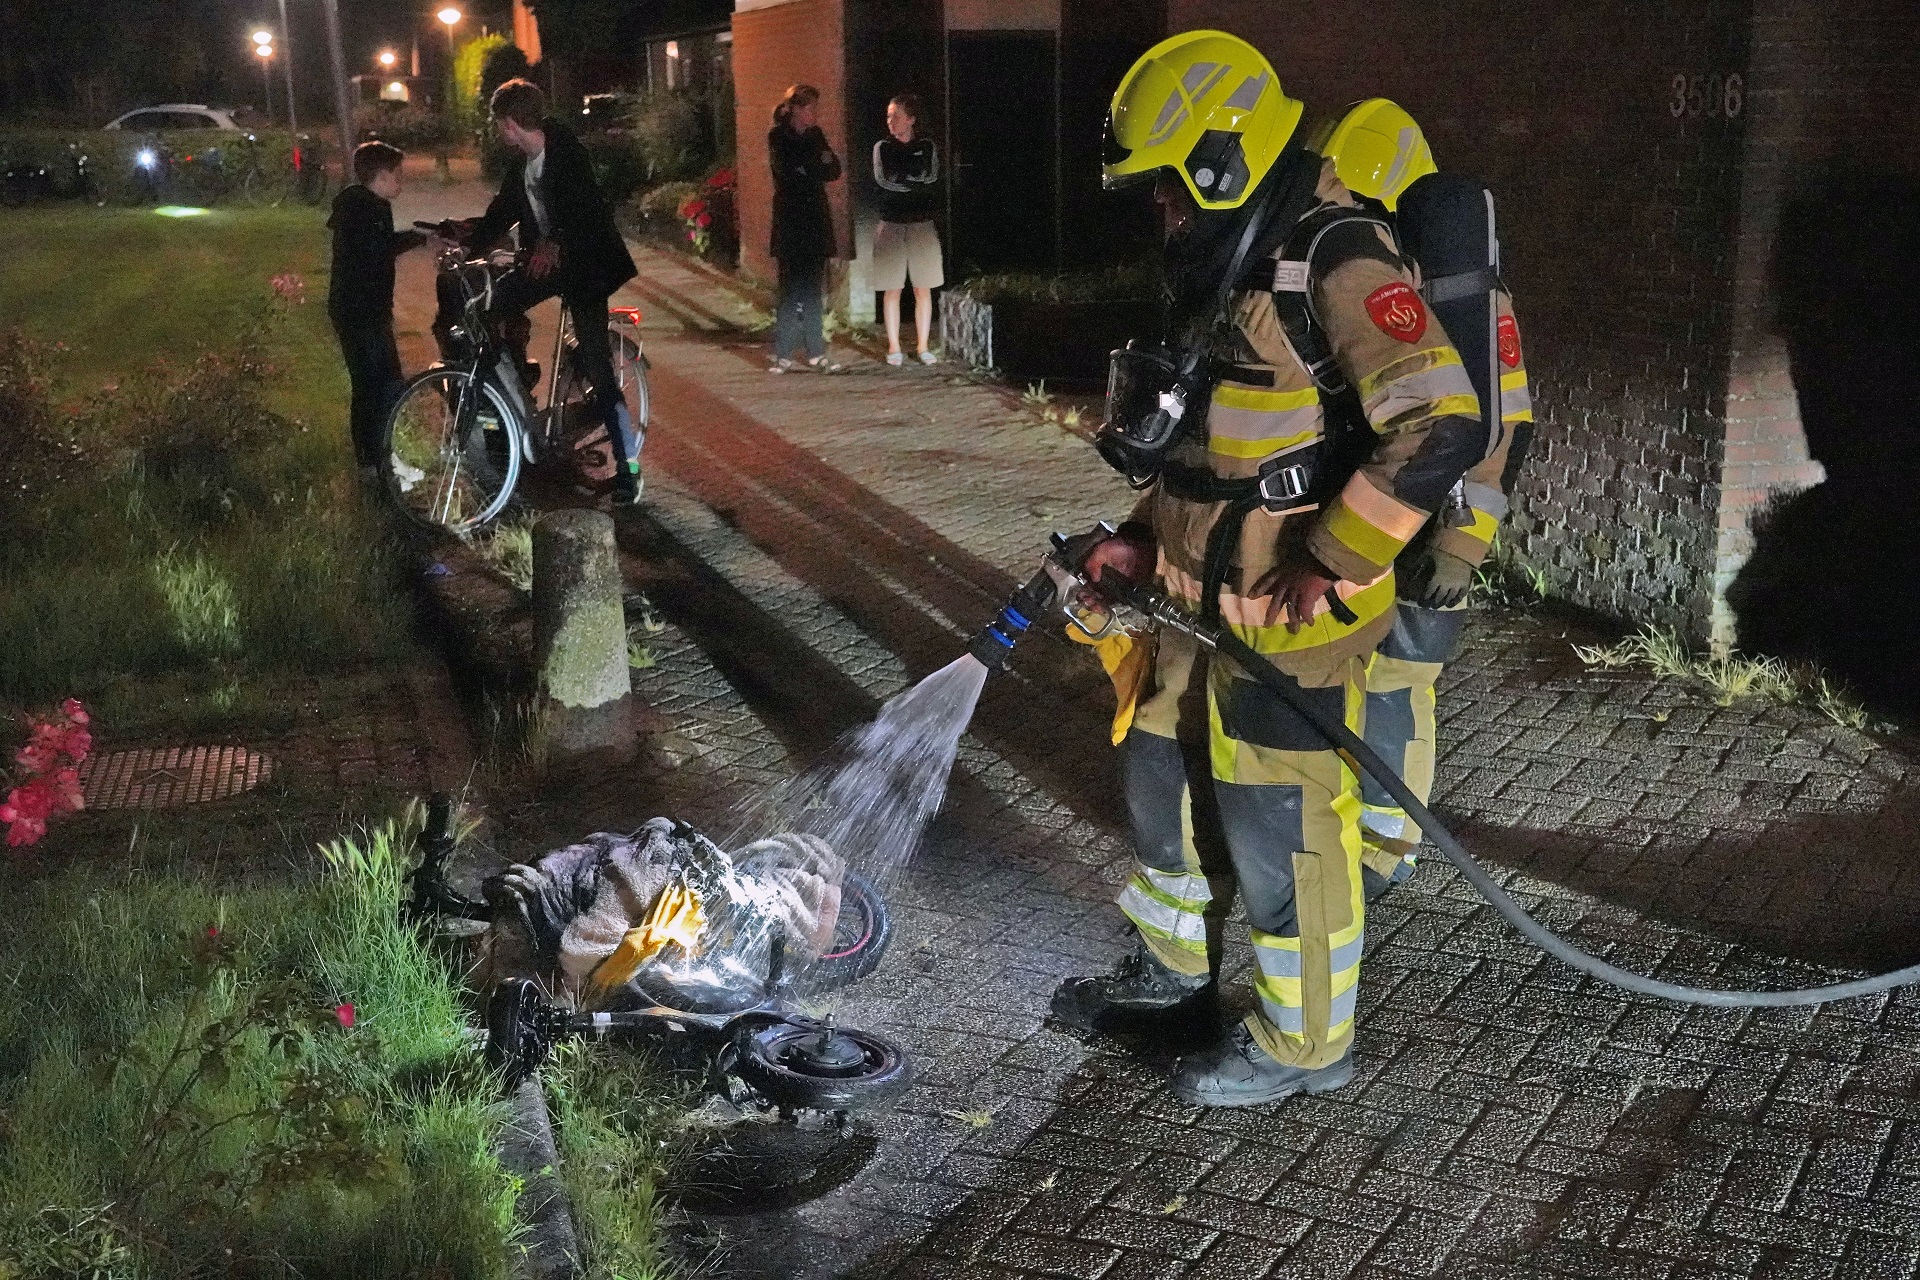 Accu van elektrische fiets ontploft in woning en vliegt in brand, bewoners schrikken wakker